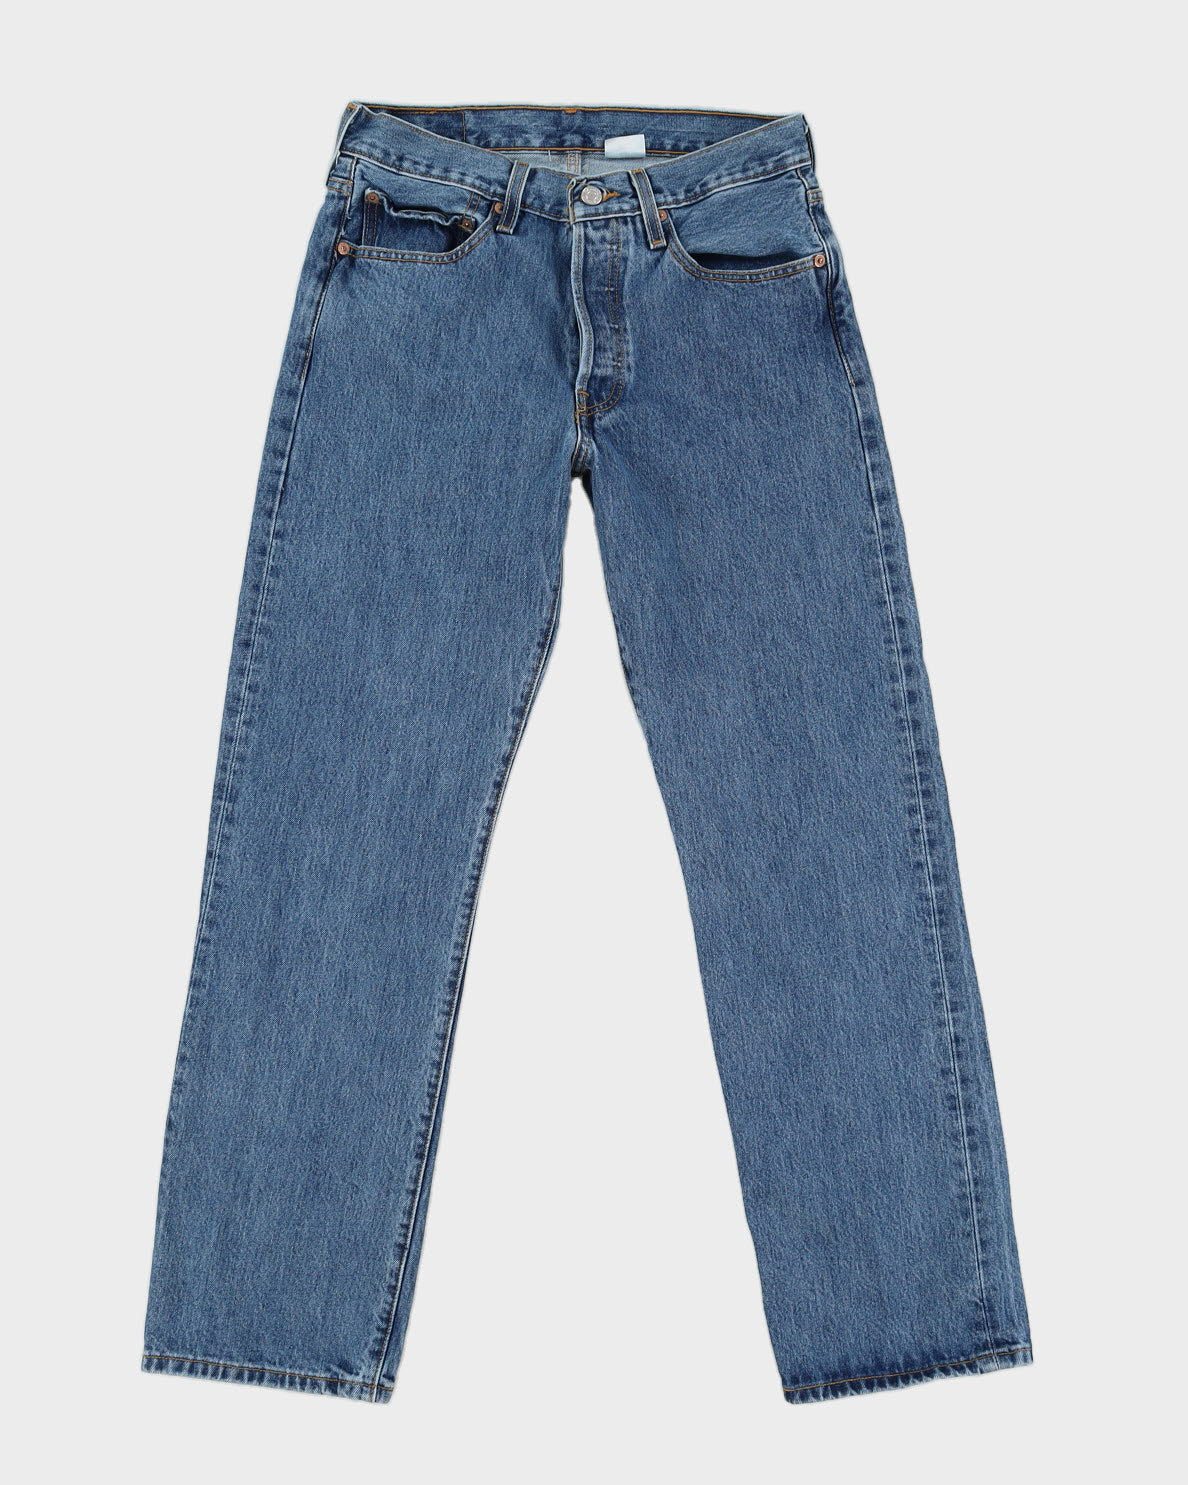 Mens Blue Levi's Jeans - W 30 L 31